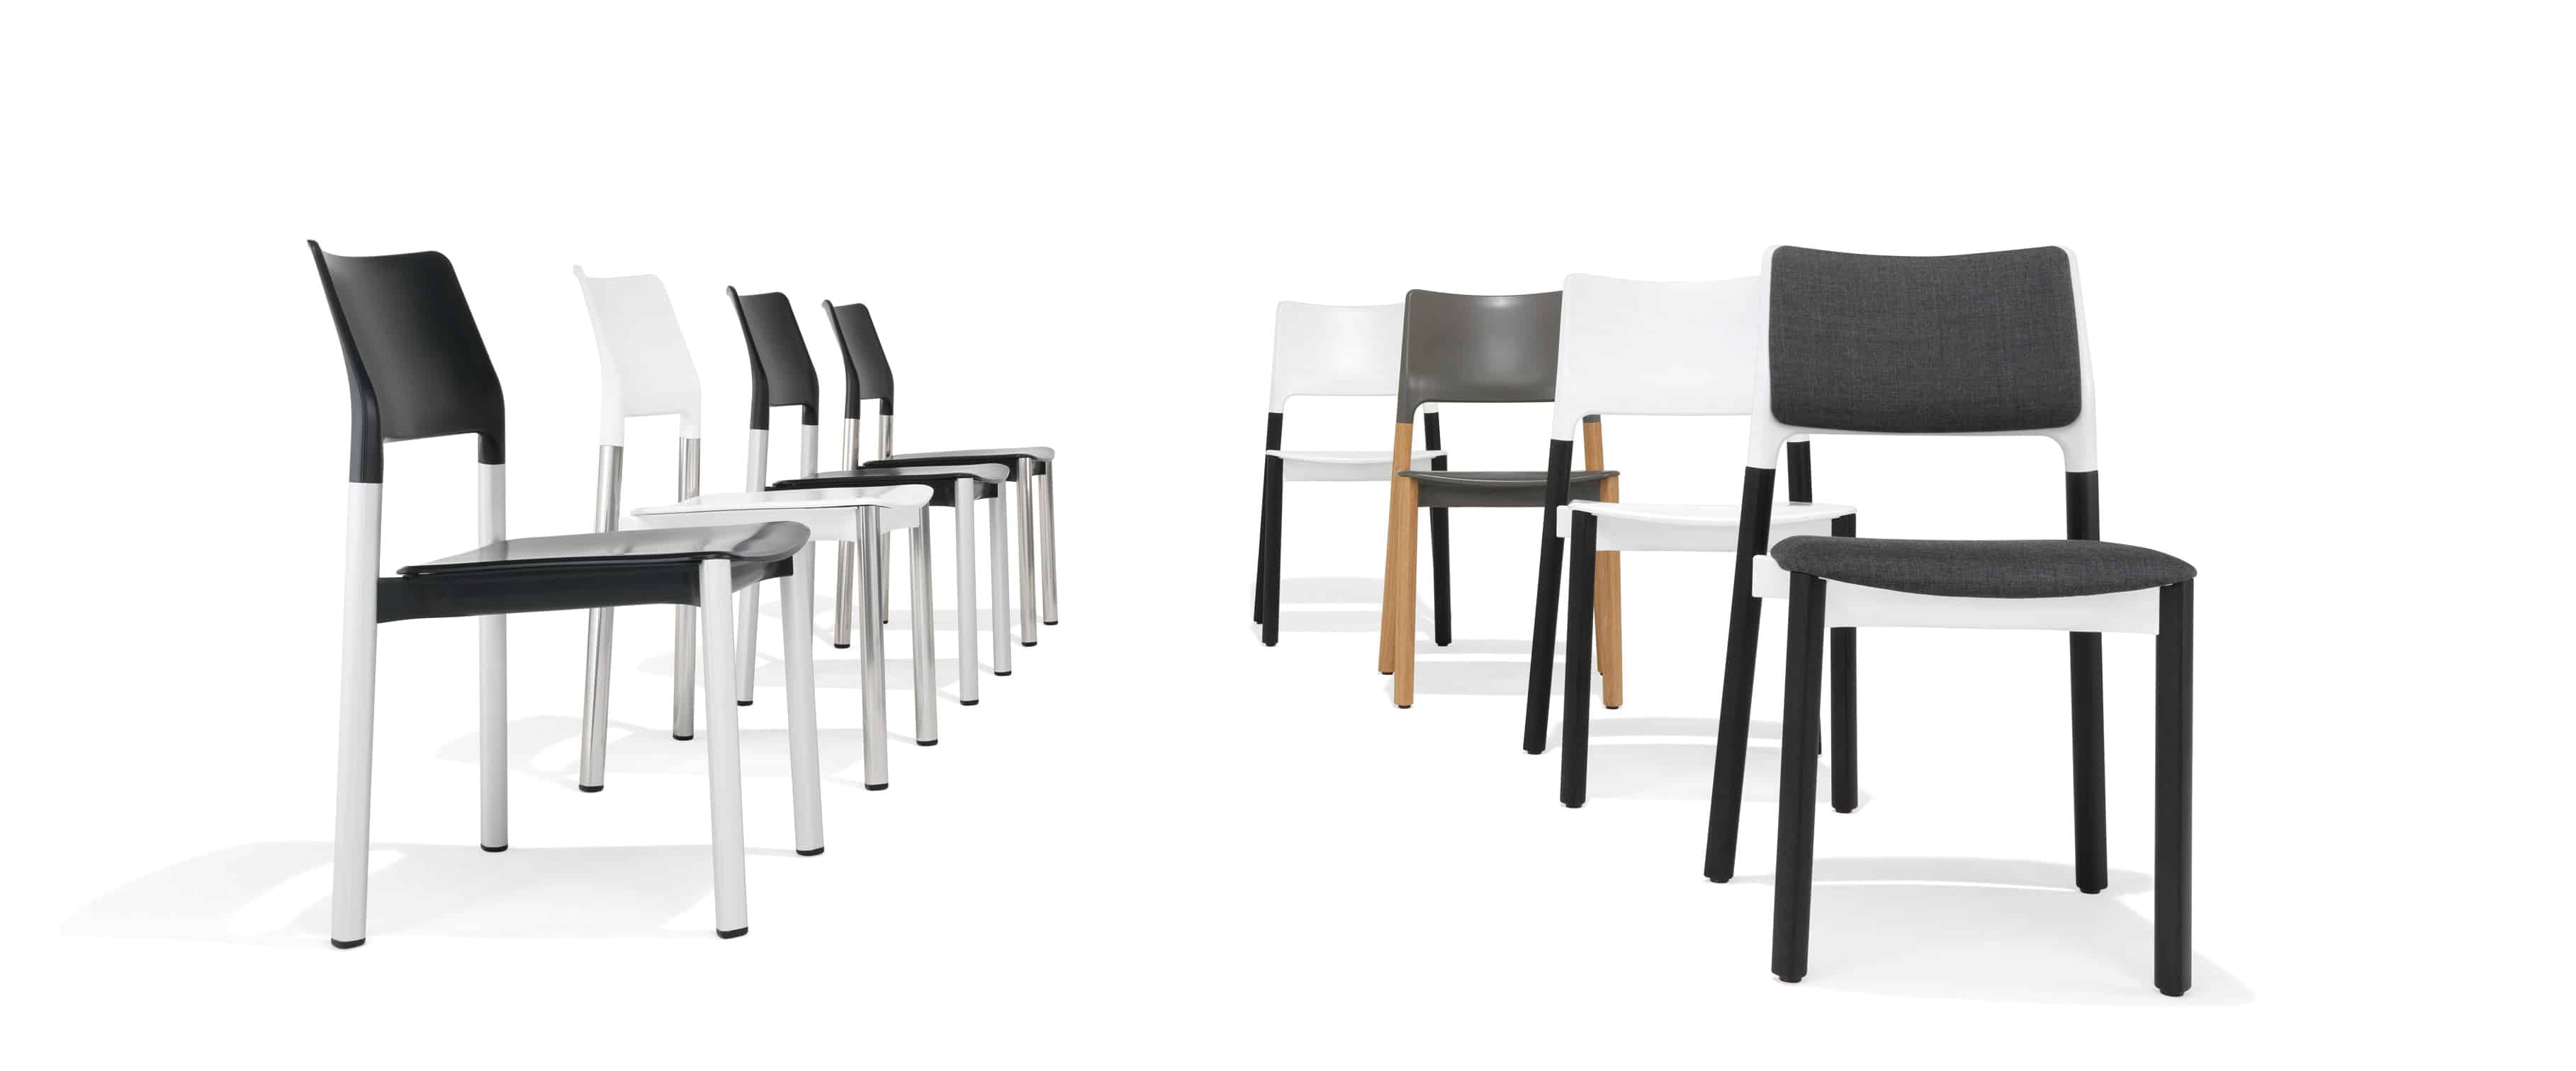 Die Evolution Eines Stuhls Der 3600 Arn Design By Scaffidi And Johansen Seniorenheim Magazin